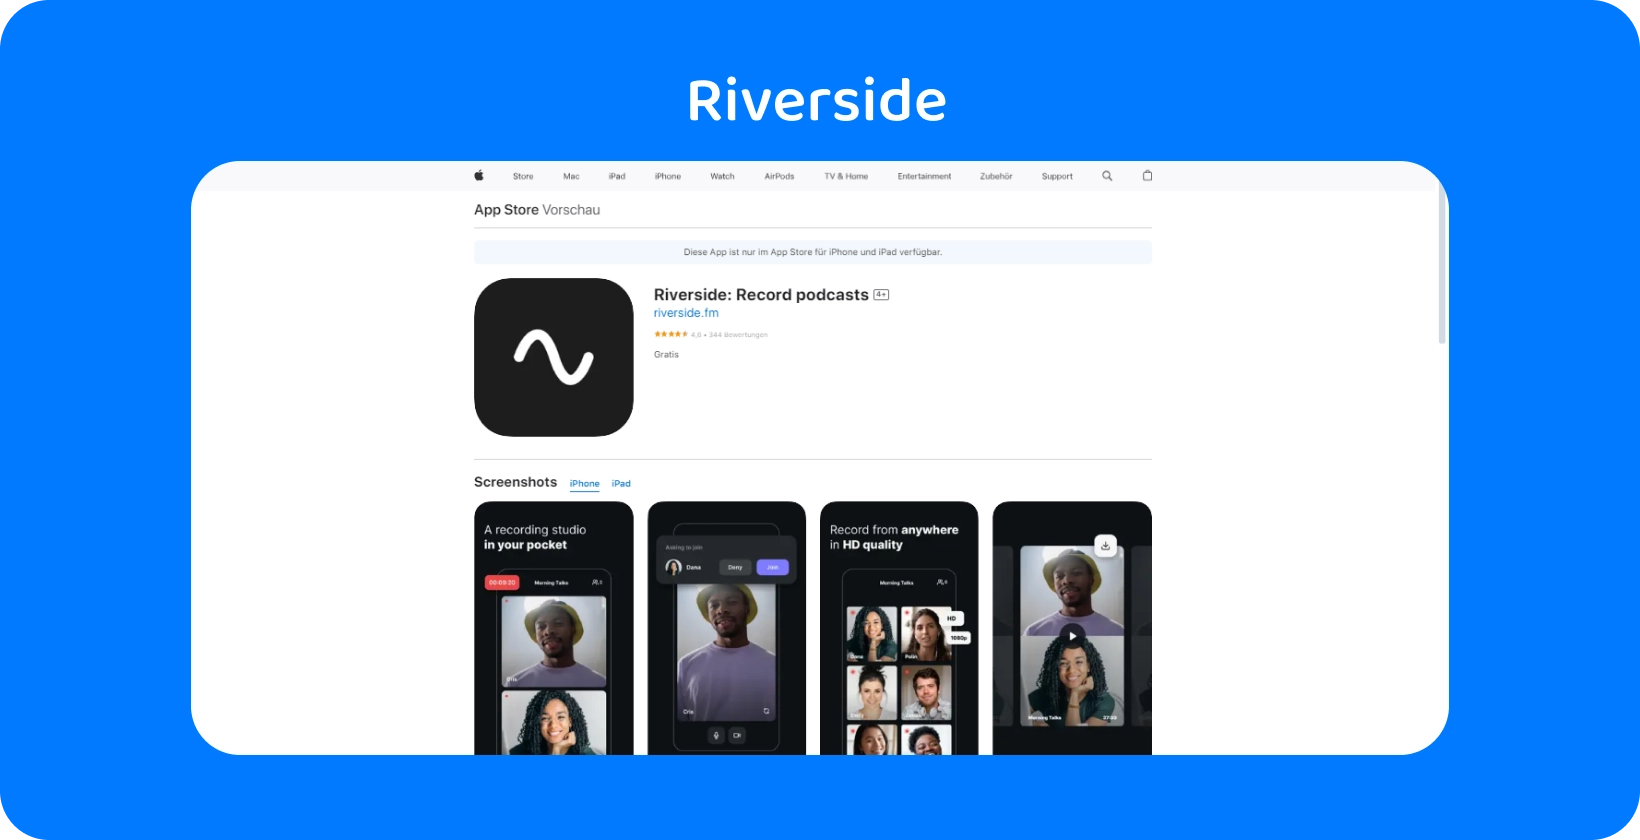 Riverside-app op de App Store met tools voor het opnemen van podcasts van hoge kwaliteit en interviews op afstand.